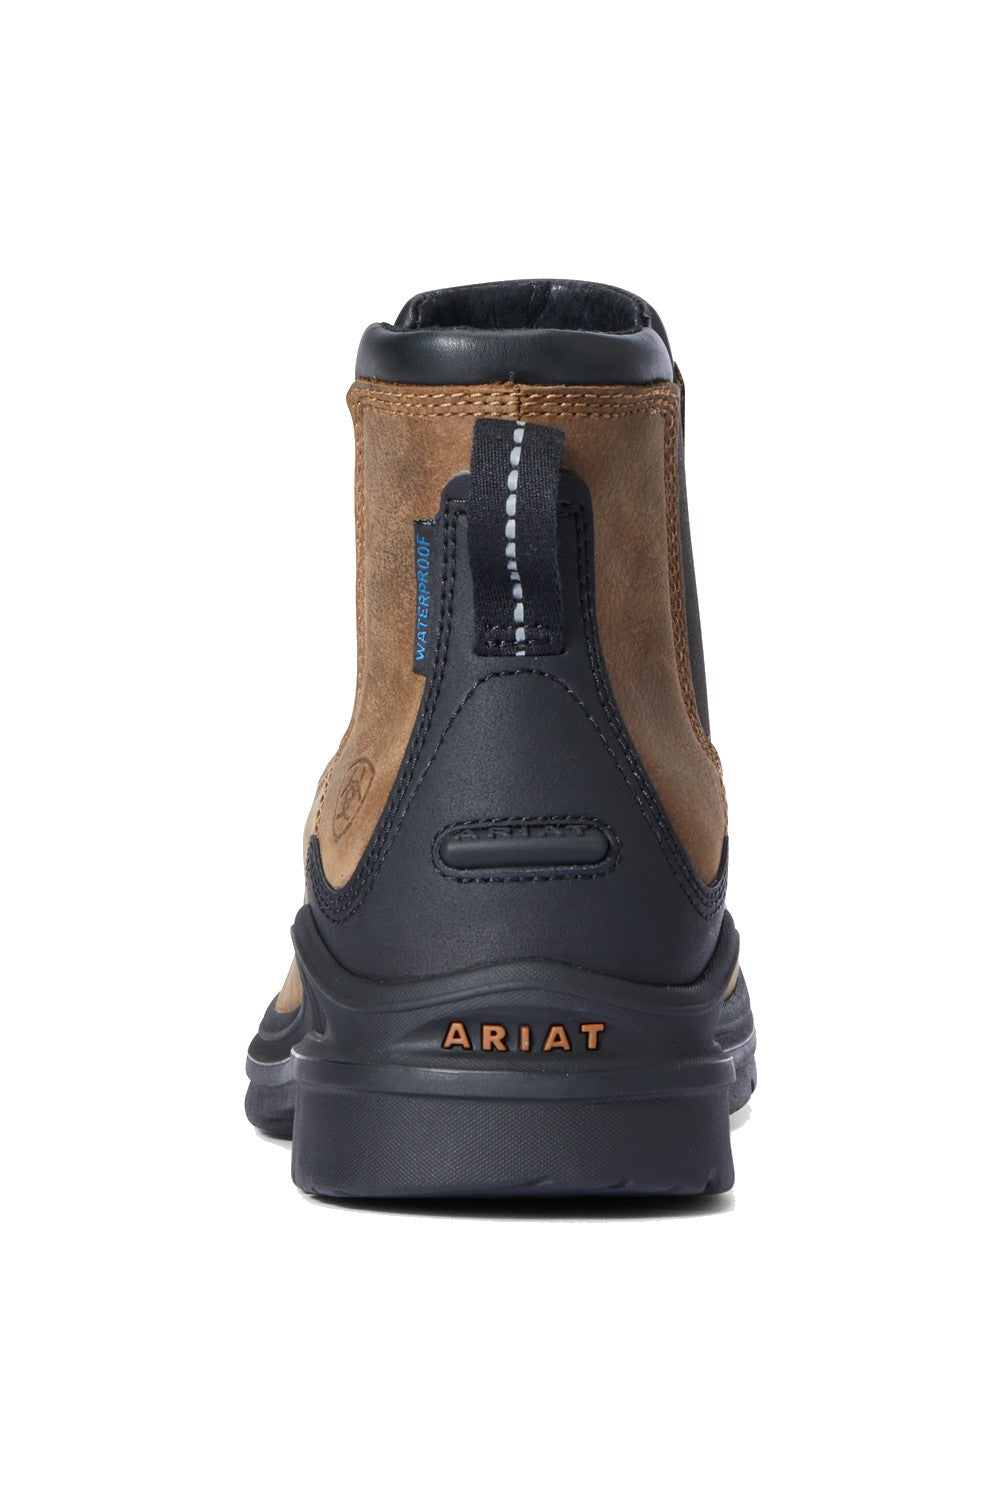 Ariat Barnyard Twin Gore Waterproof II Boots